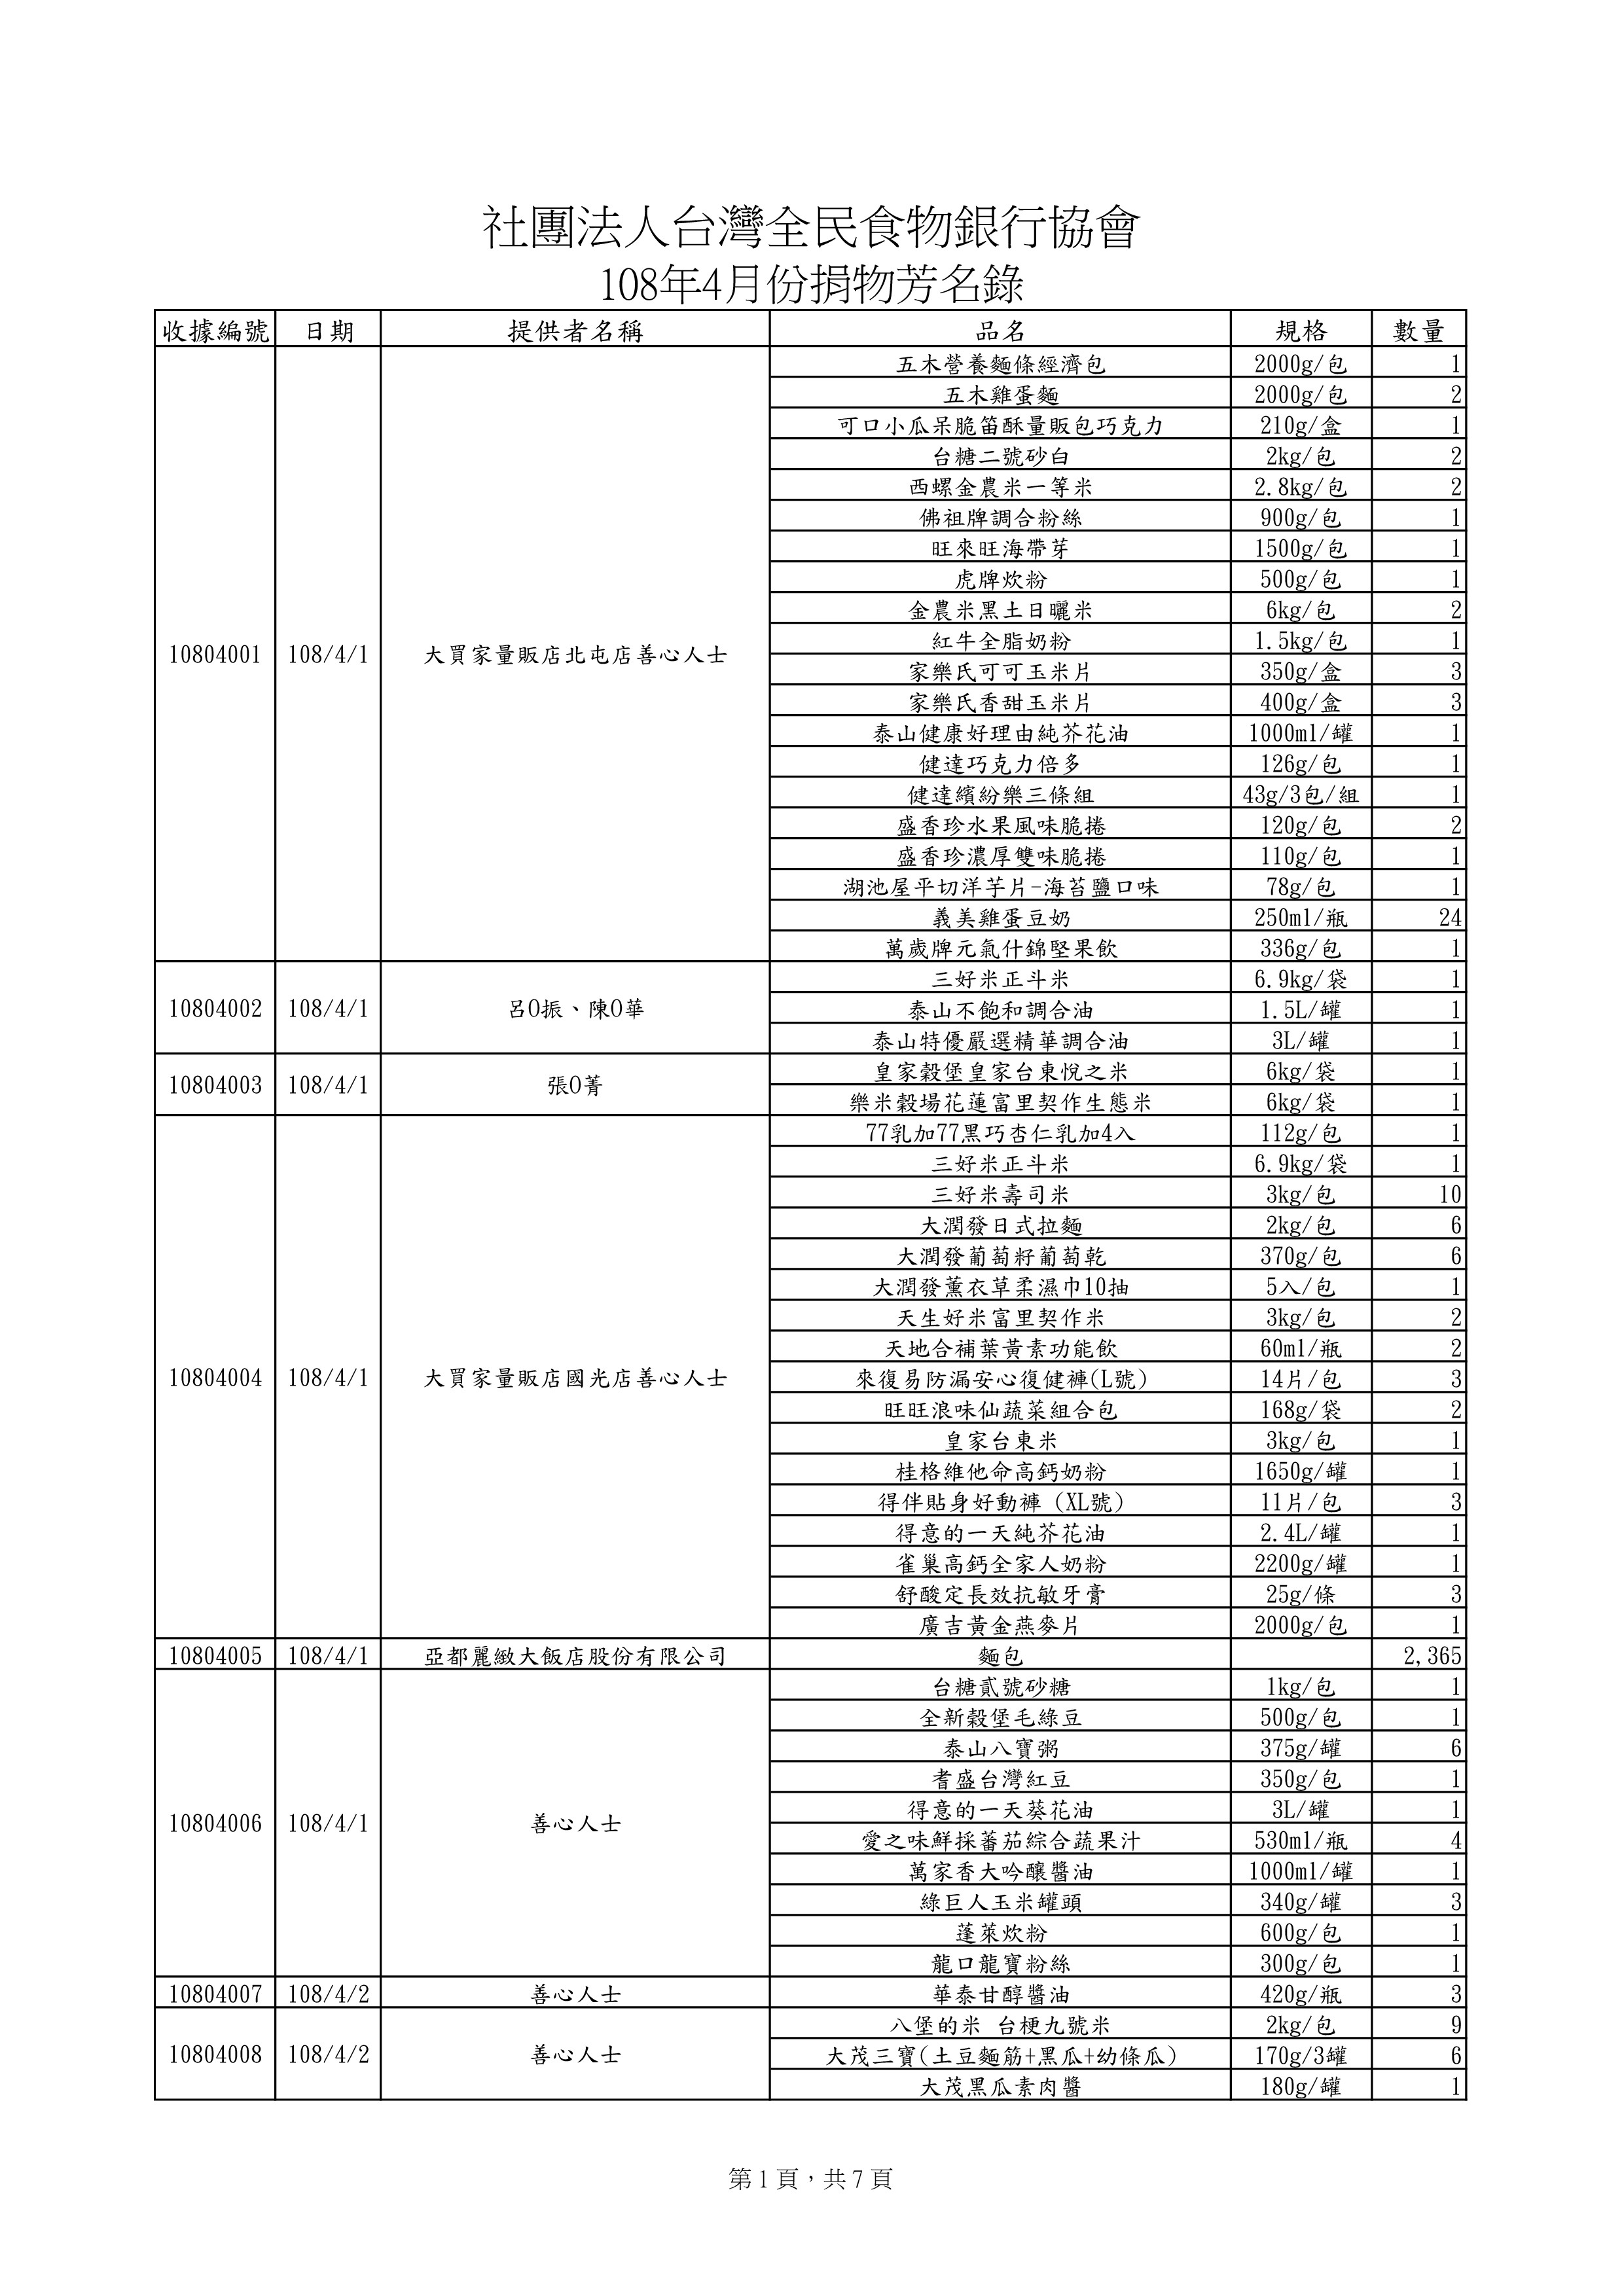 捐贈物品清單2019-4月份(系統報表)-0.jpg